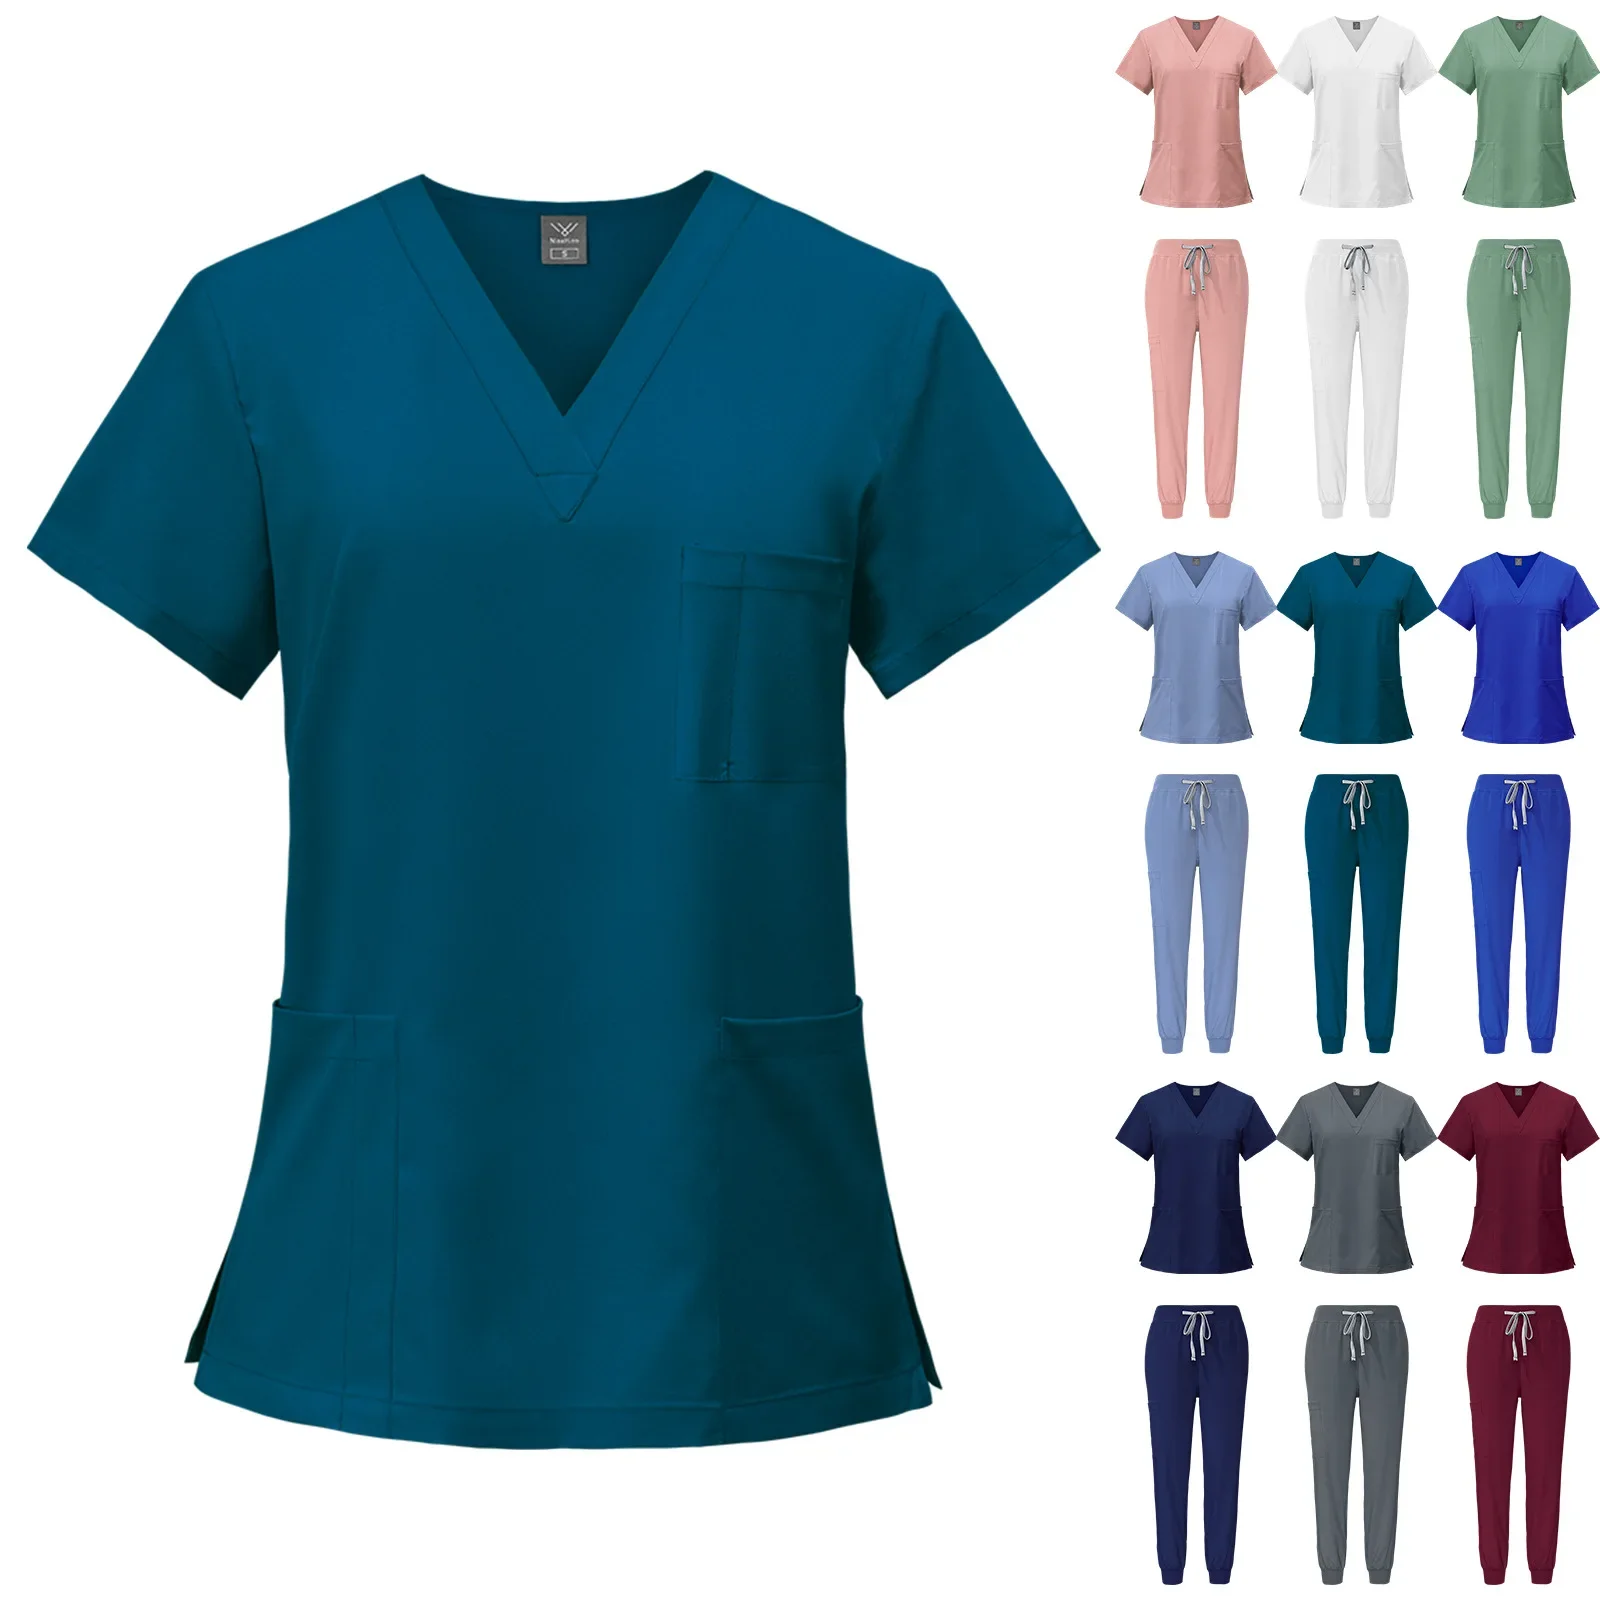 Многоцветная унисекс Аптечная униформа медсестры, рабочая одежда больничного врача, униформа для хирургии полости рта, медицинские скрабы, женские наборы Изображение 1